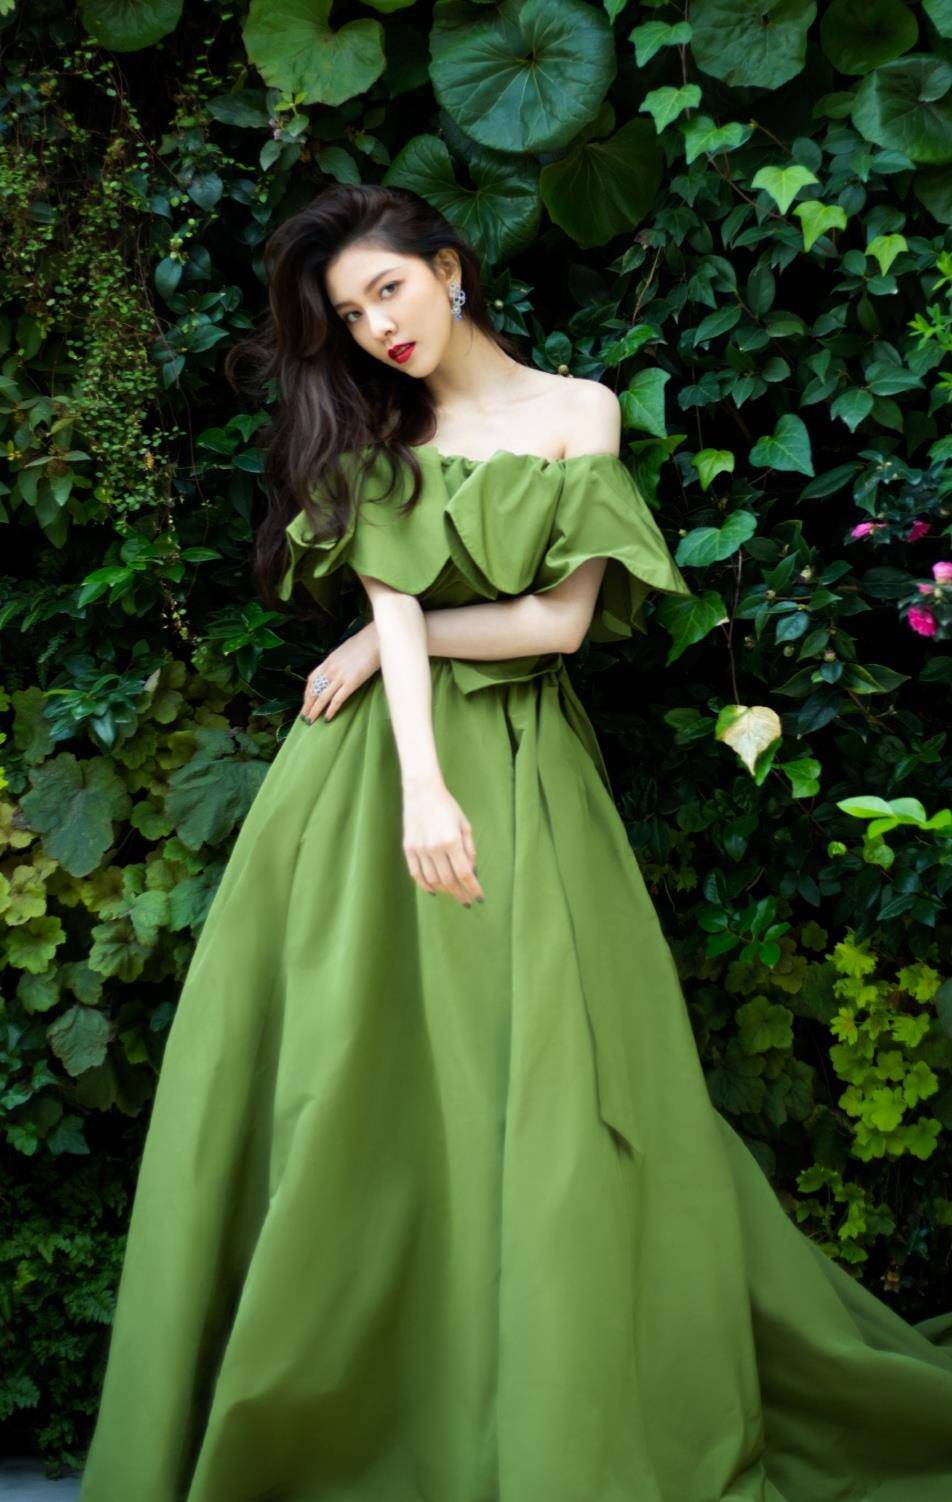 宋妍霏的这款绿色系礼服上半身采用一字肩的版型设计,完美展现出她